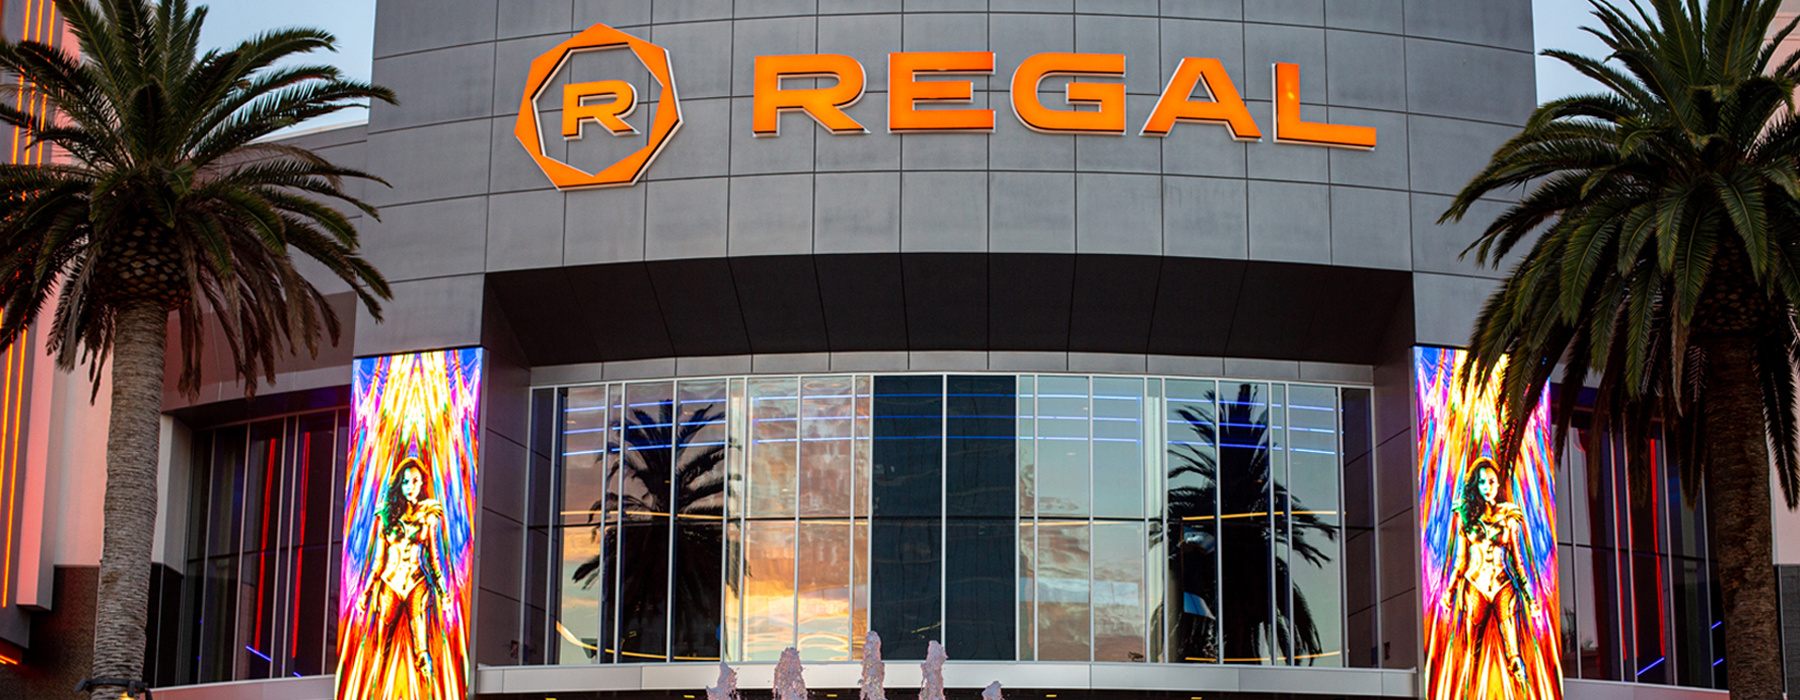 Regal movie theater at Irvine Spectrum Center